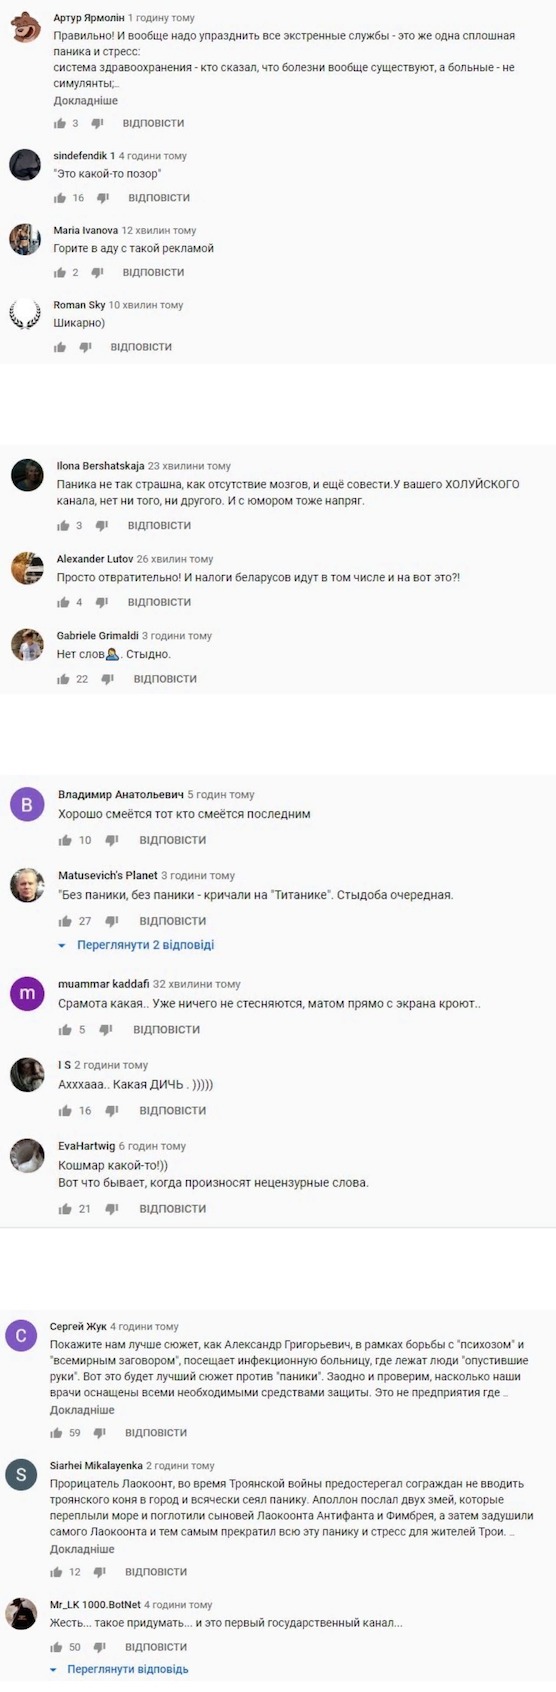 В Беларуси на госТВ крутят "смешной" ролик про коронавирус: в сети смеются